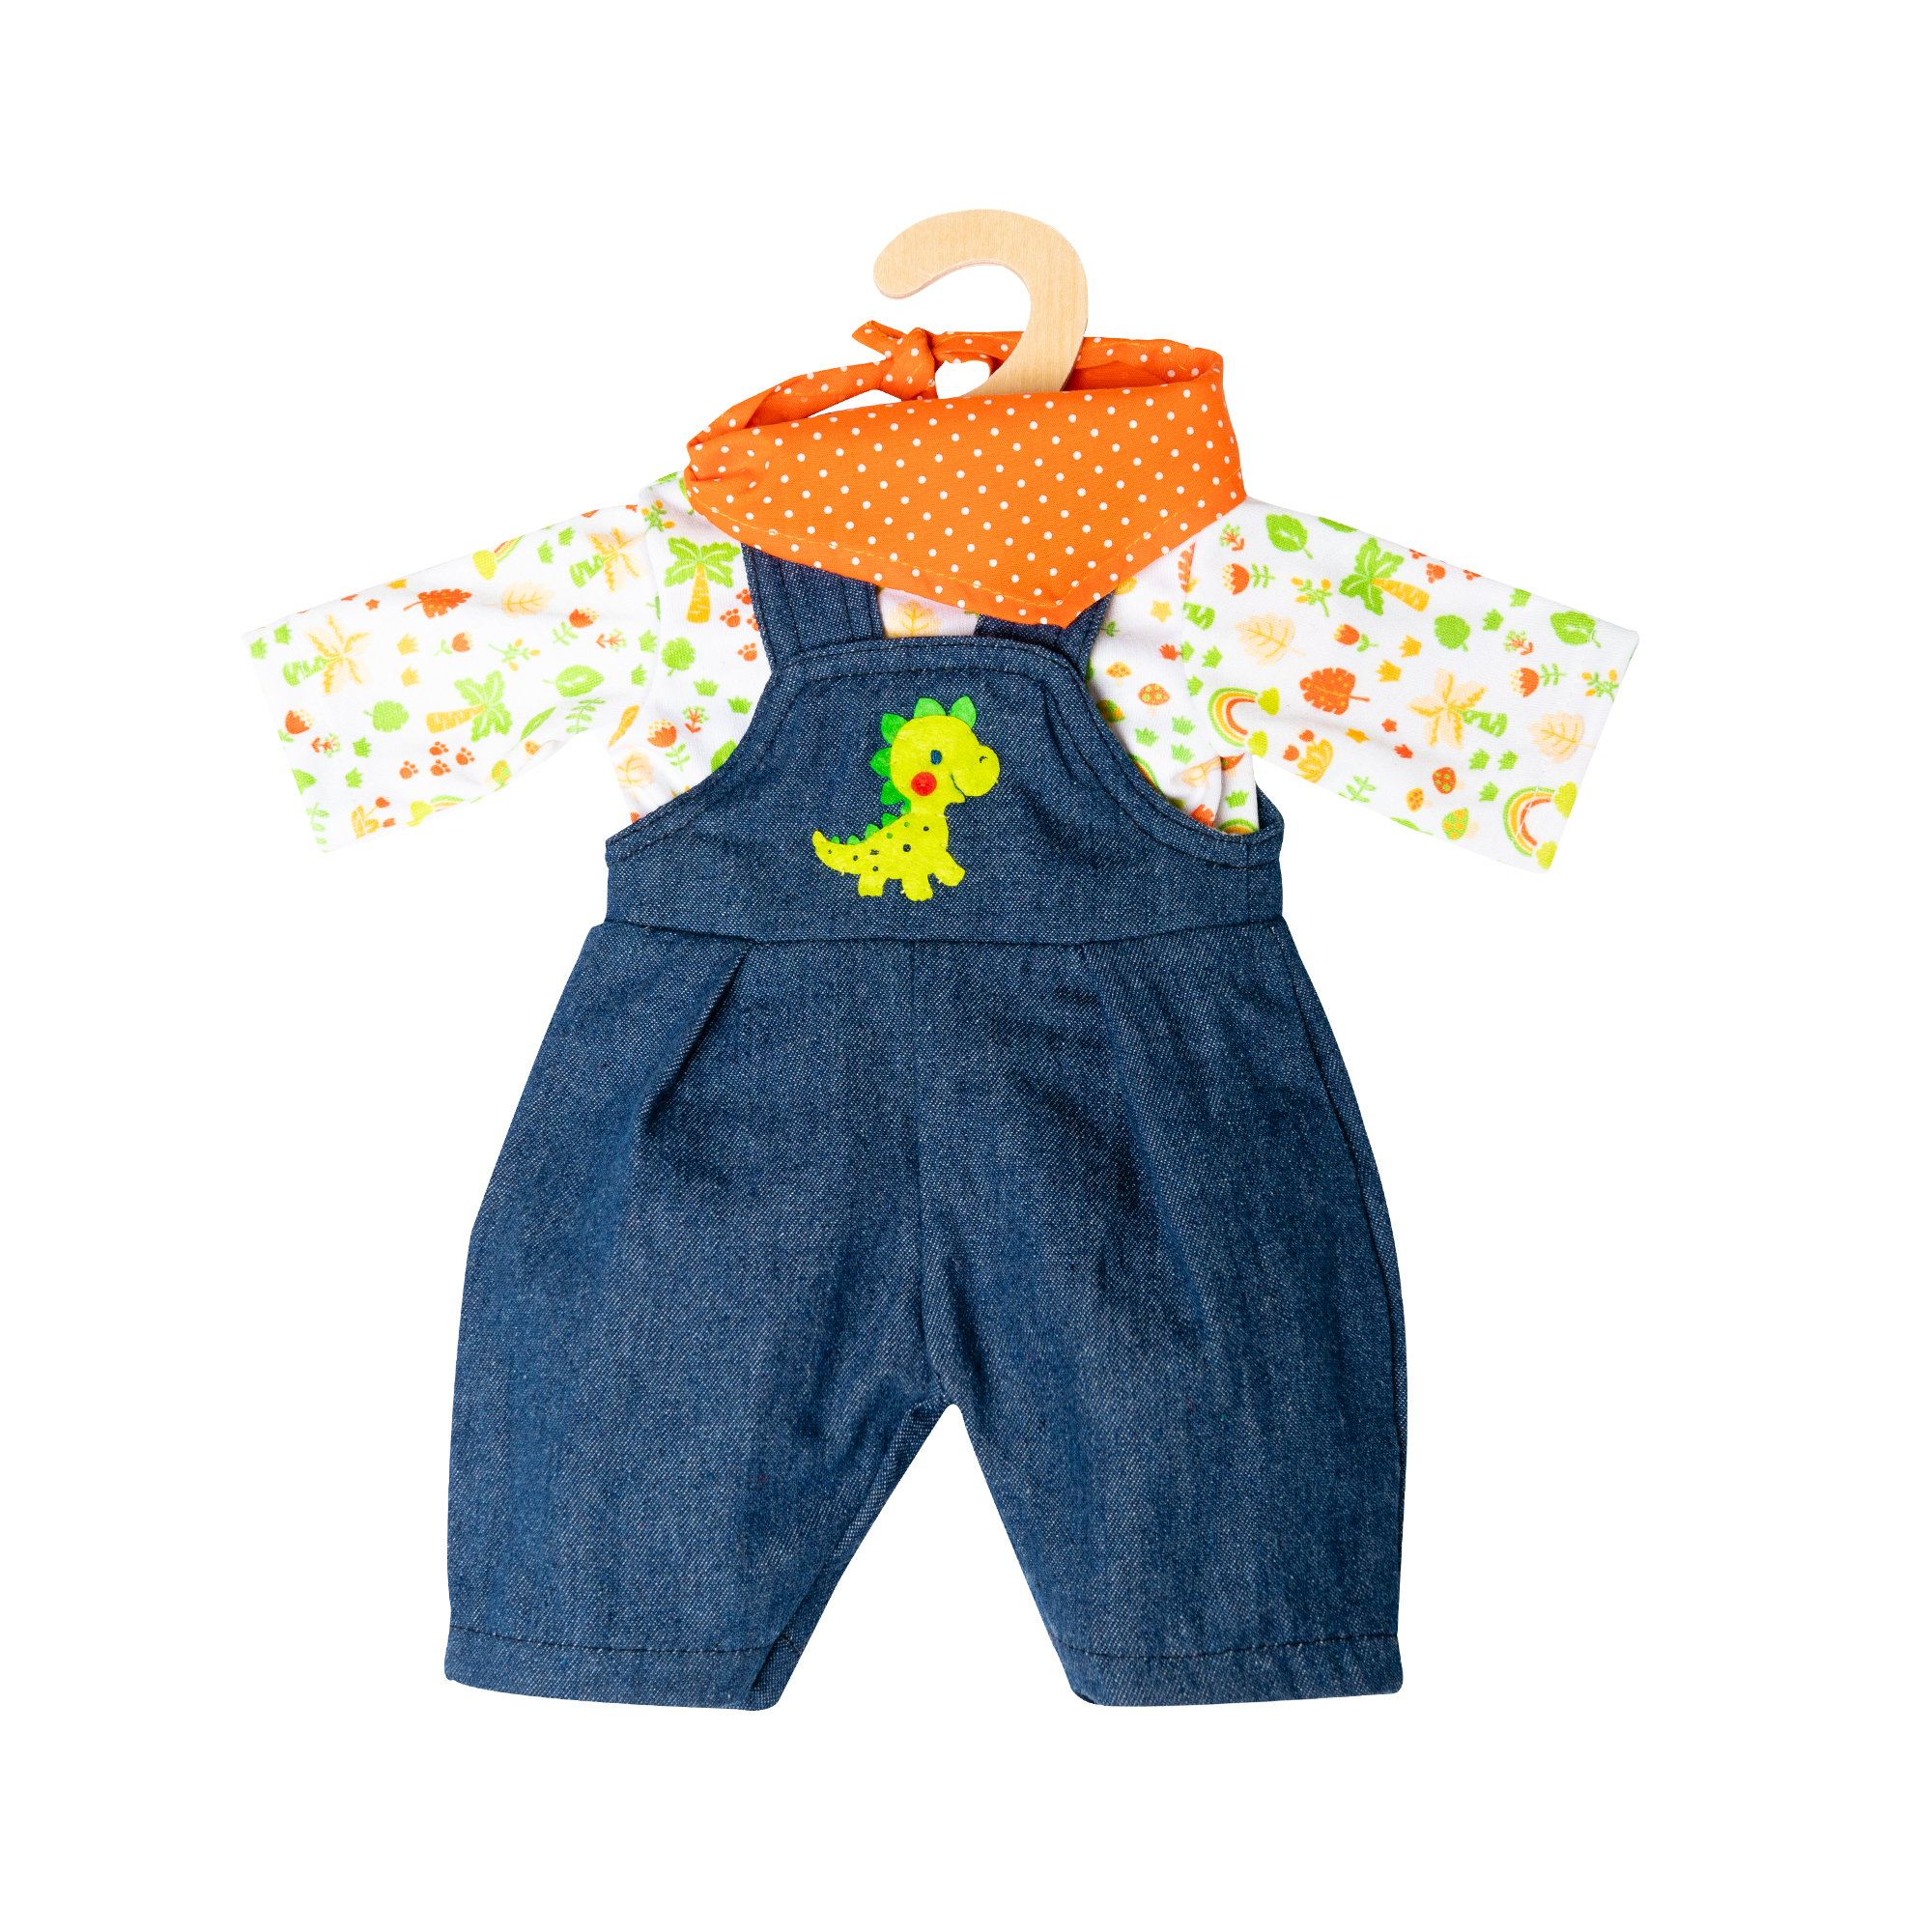 35-45 cm SPIELGUT Puppenkleidung HELESS Babyschuhe Gr 